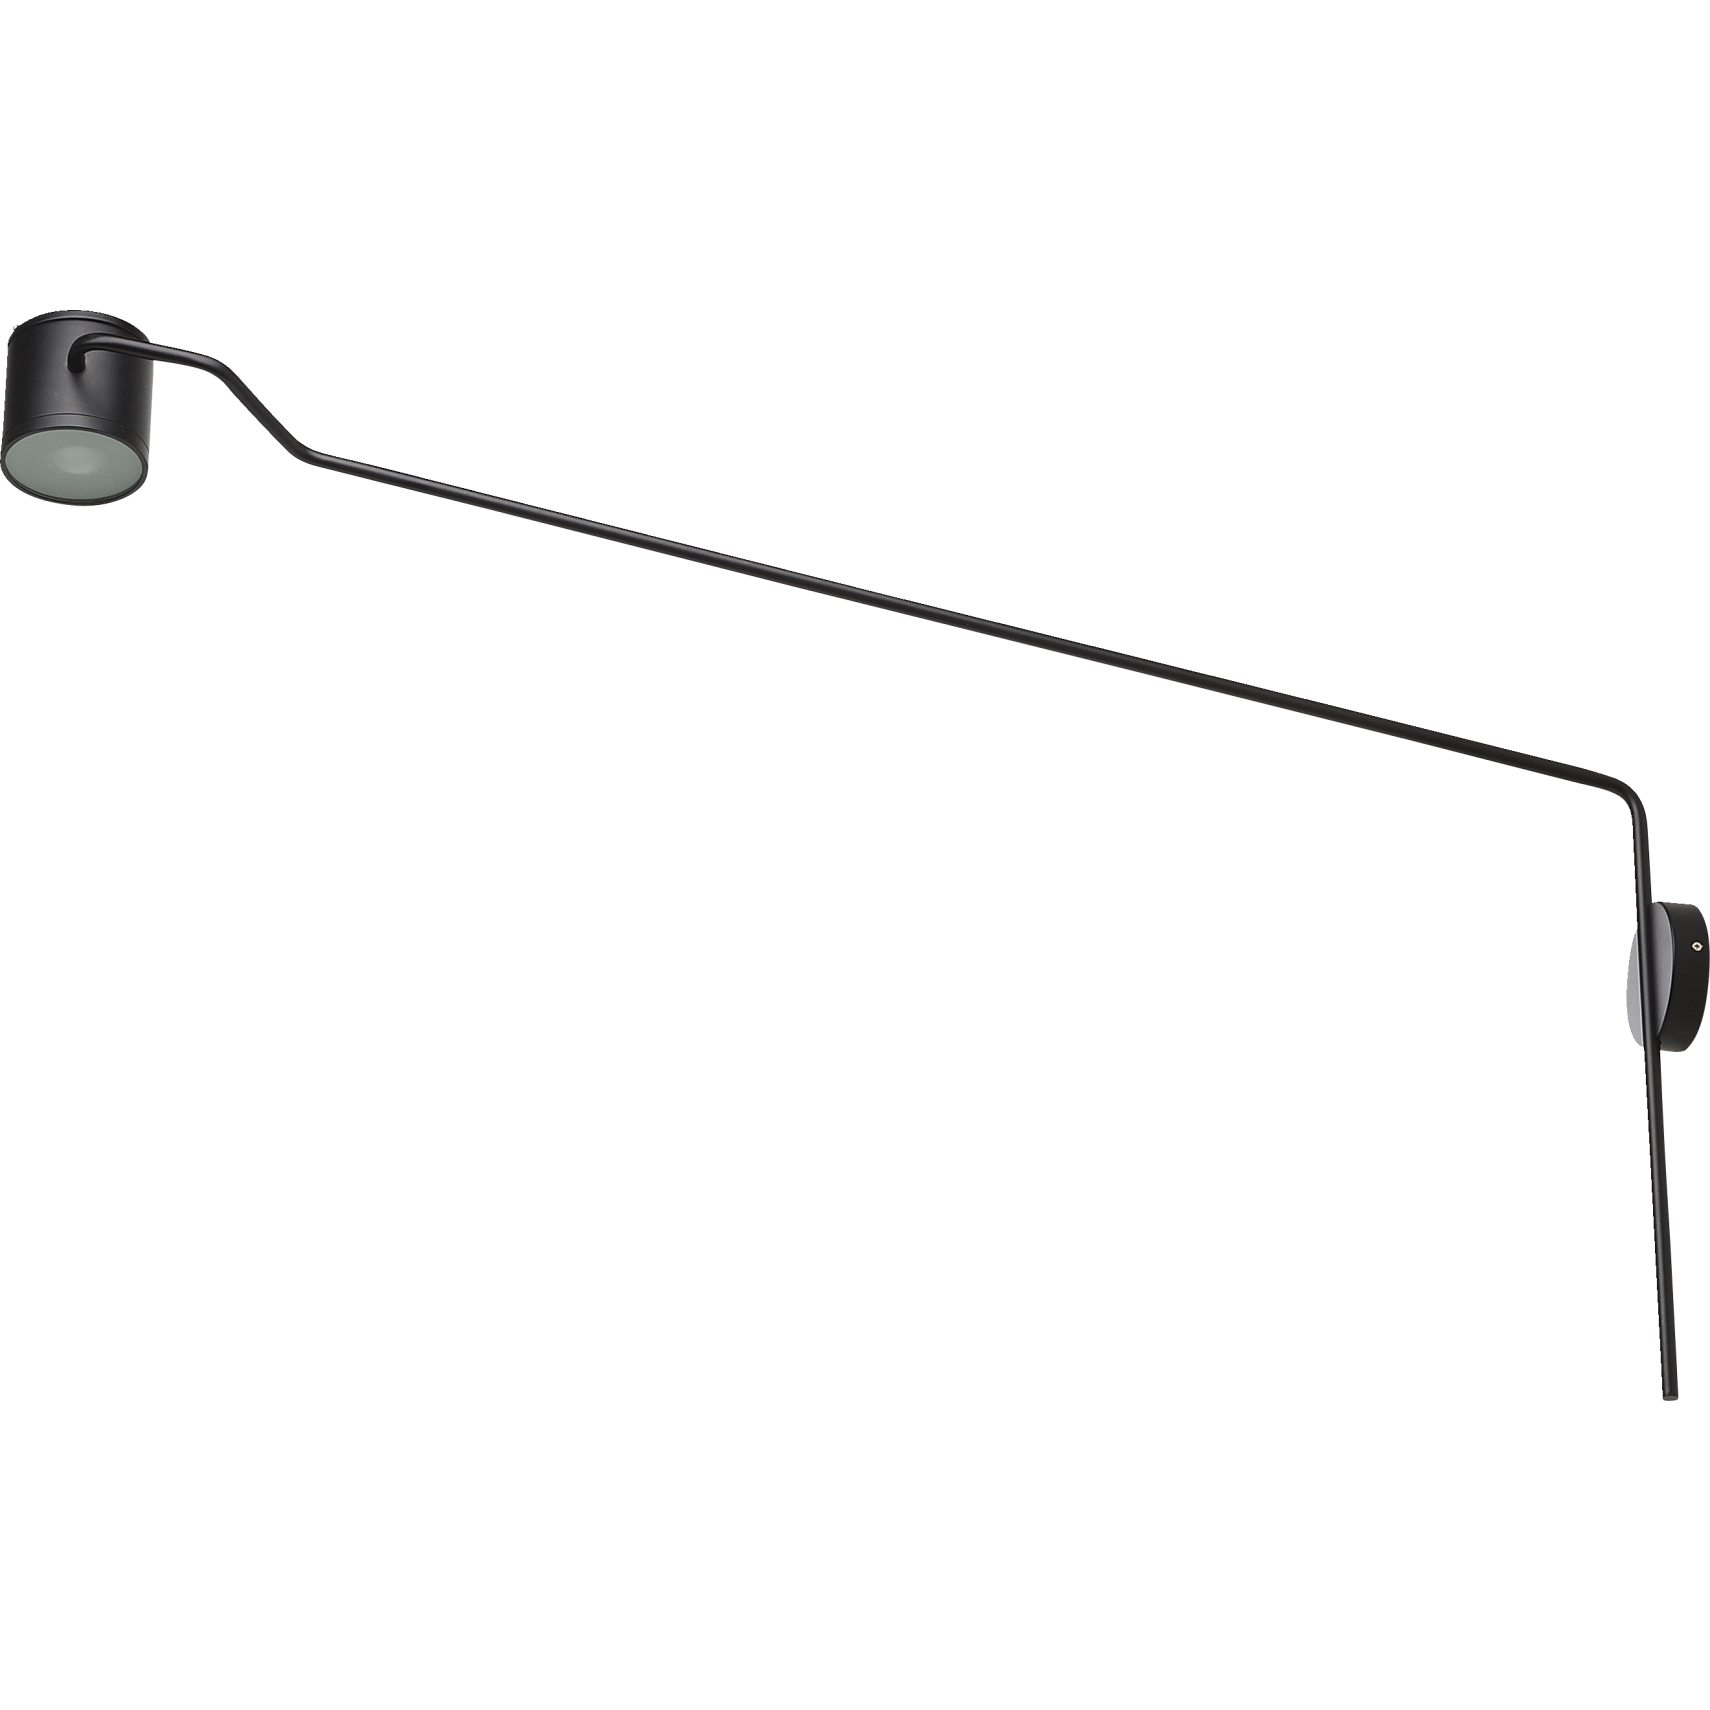 FM SPOT Vägglampa 133 x 12 cm - Matt svart metallskärm och arm och svart textilsladd